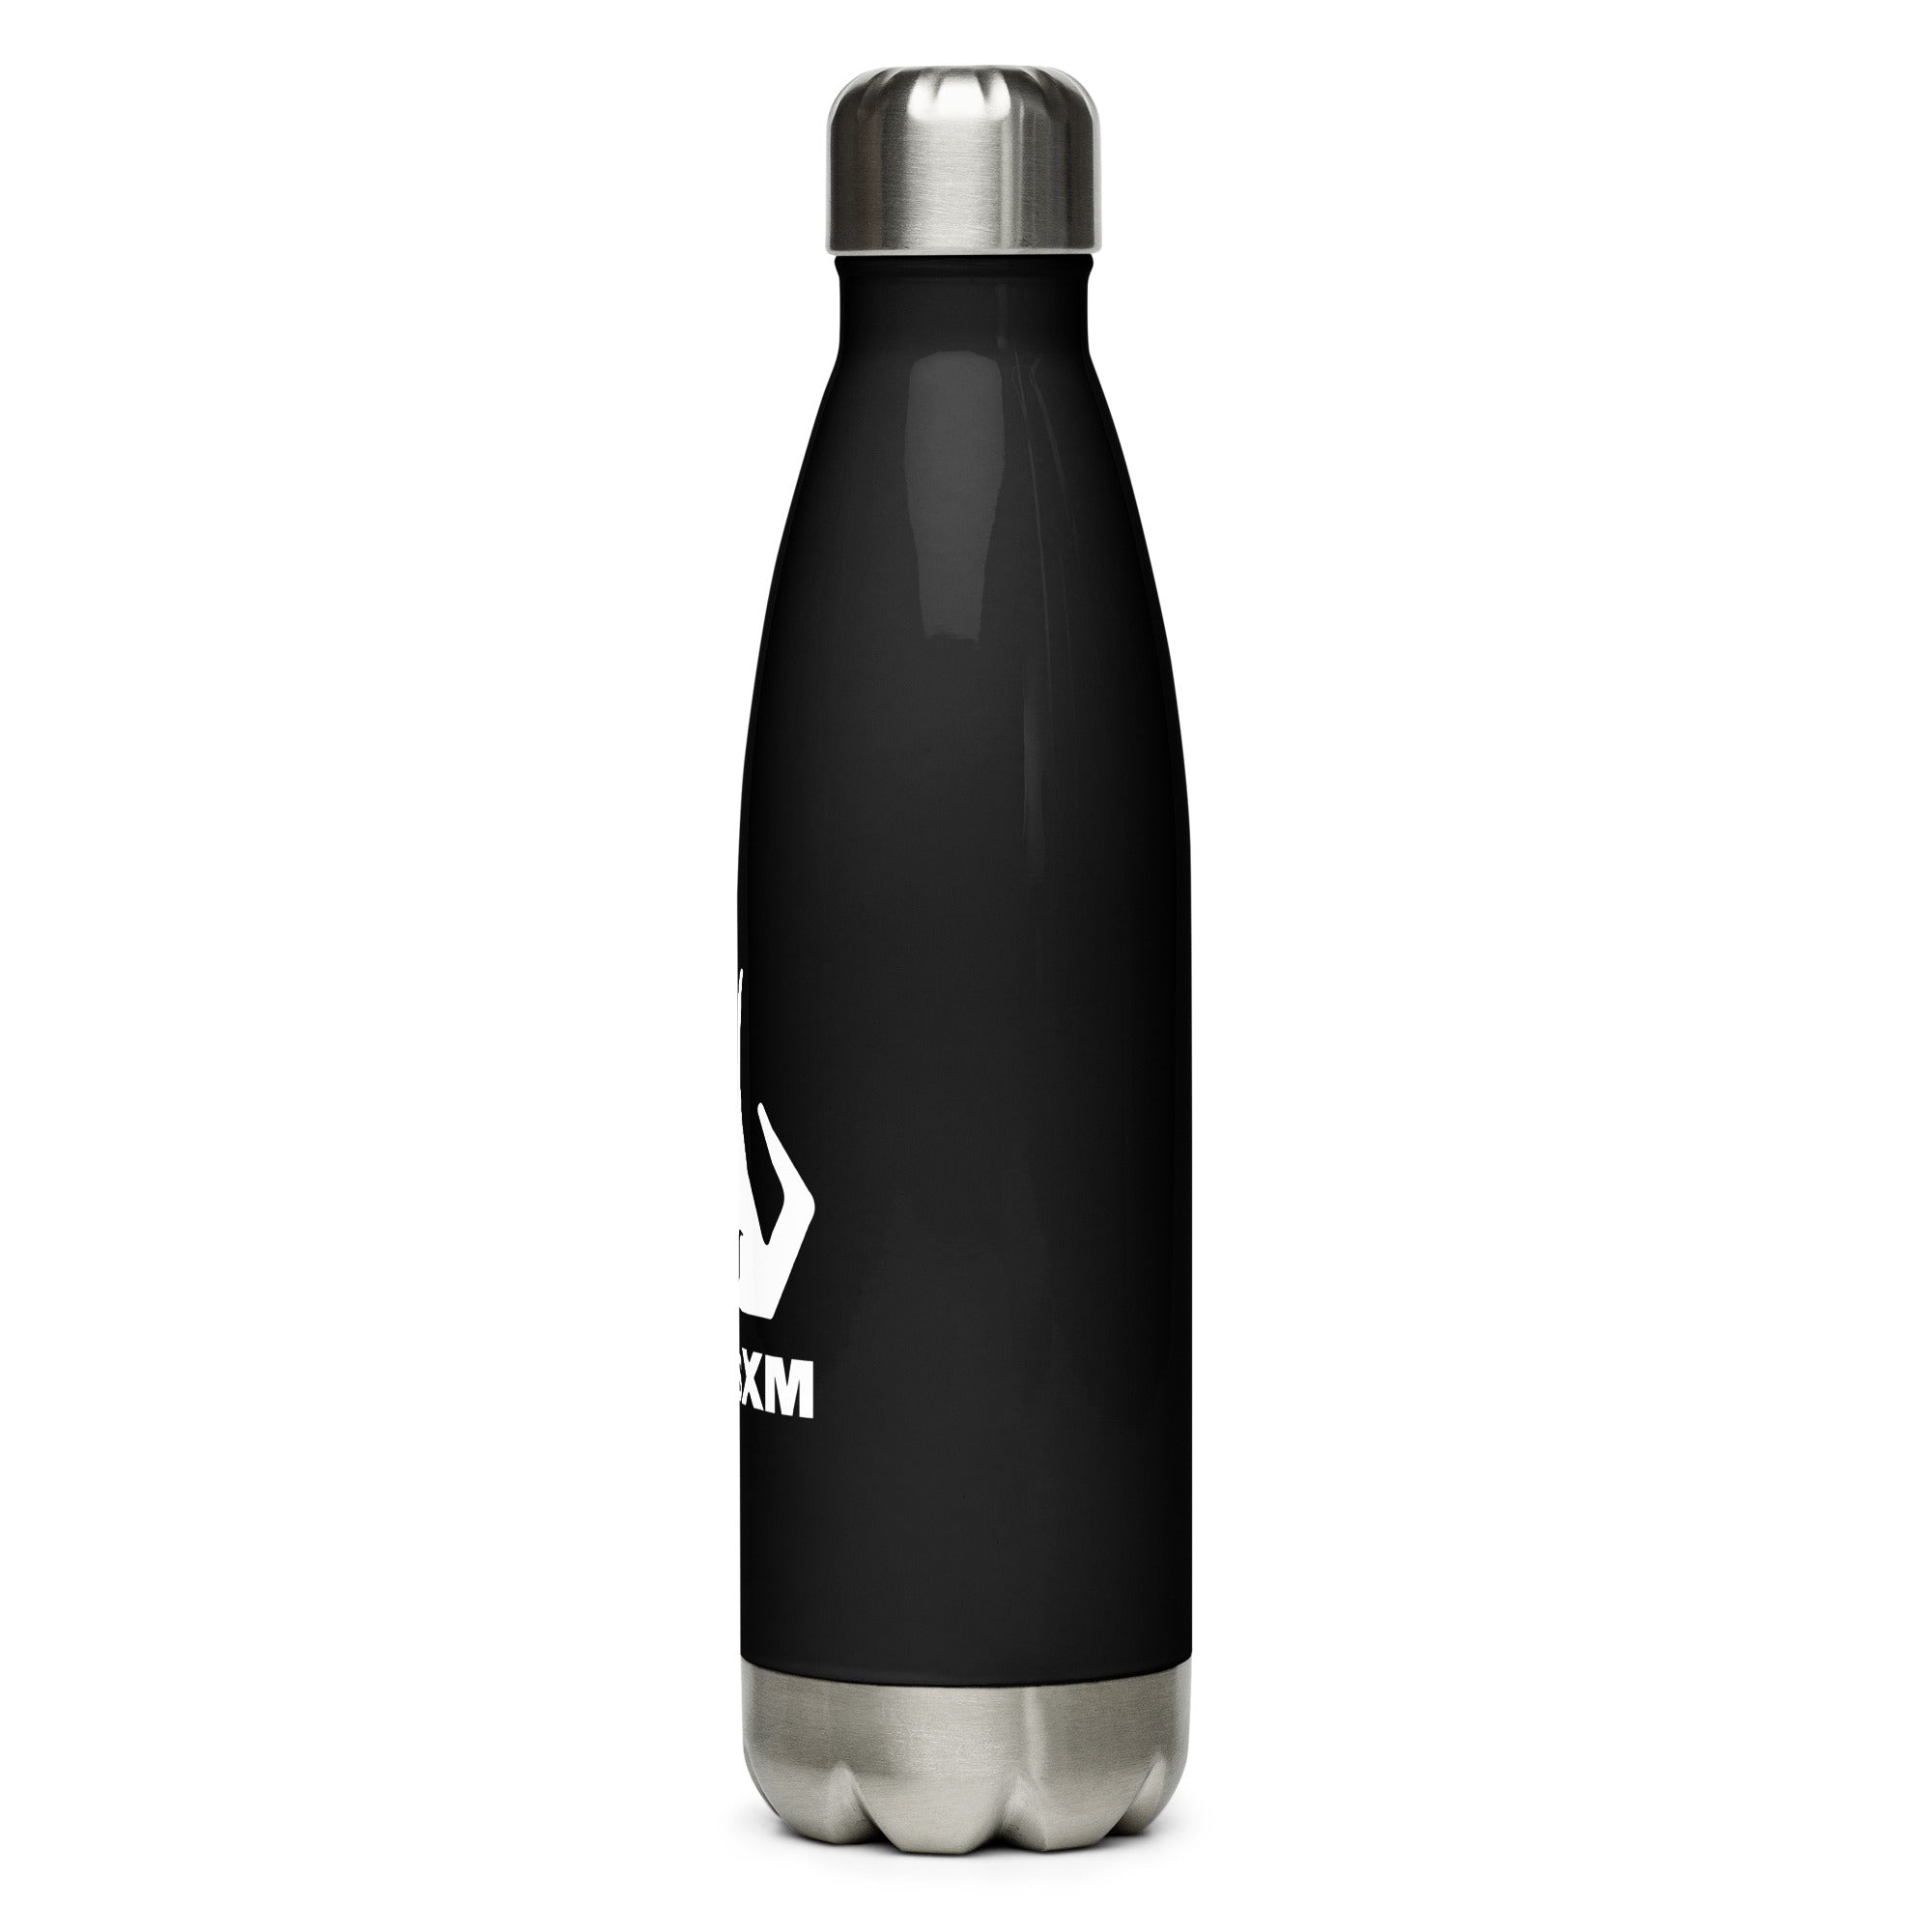 SiriusXM: Next Gen Stella Stainless Bottle